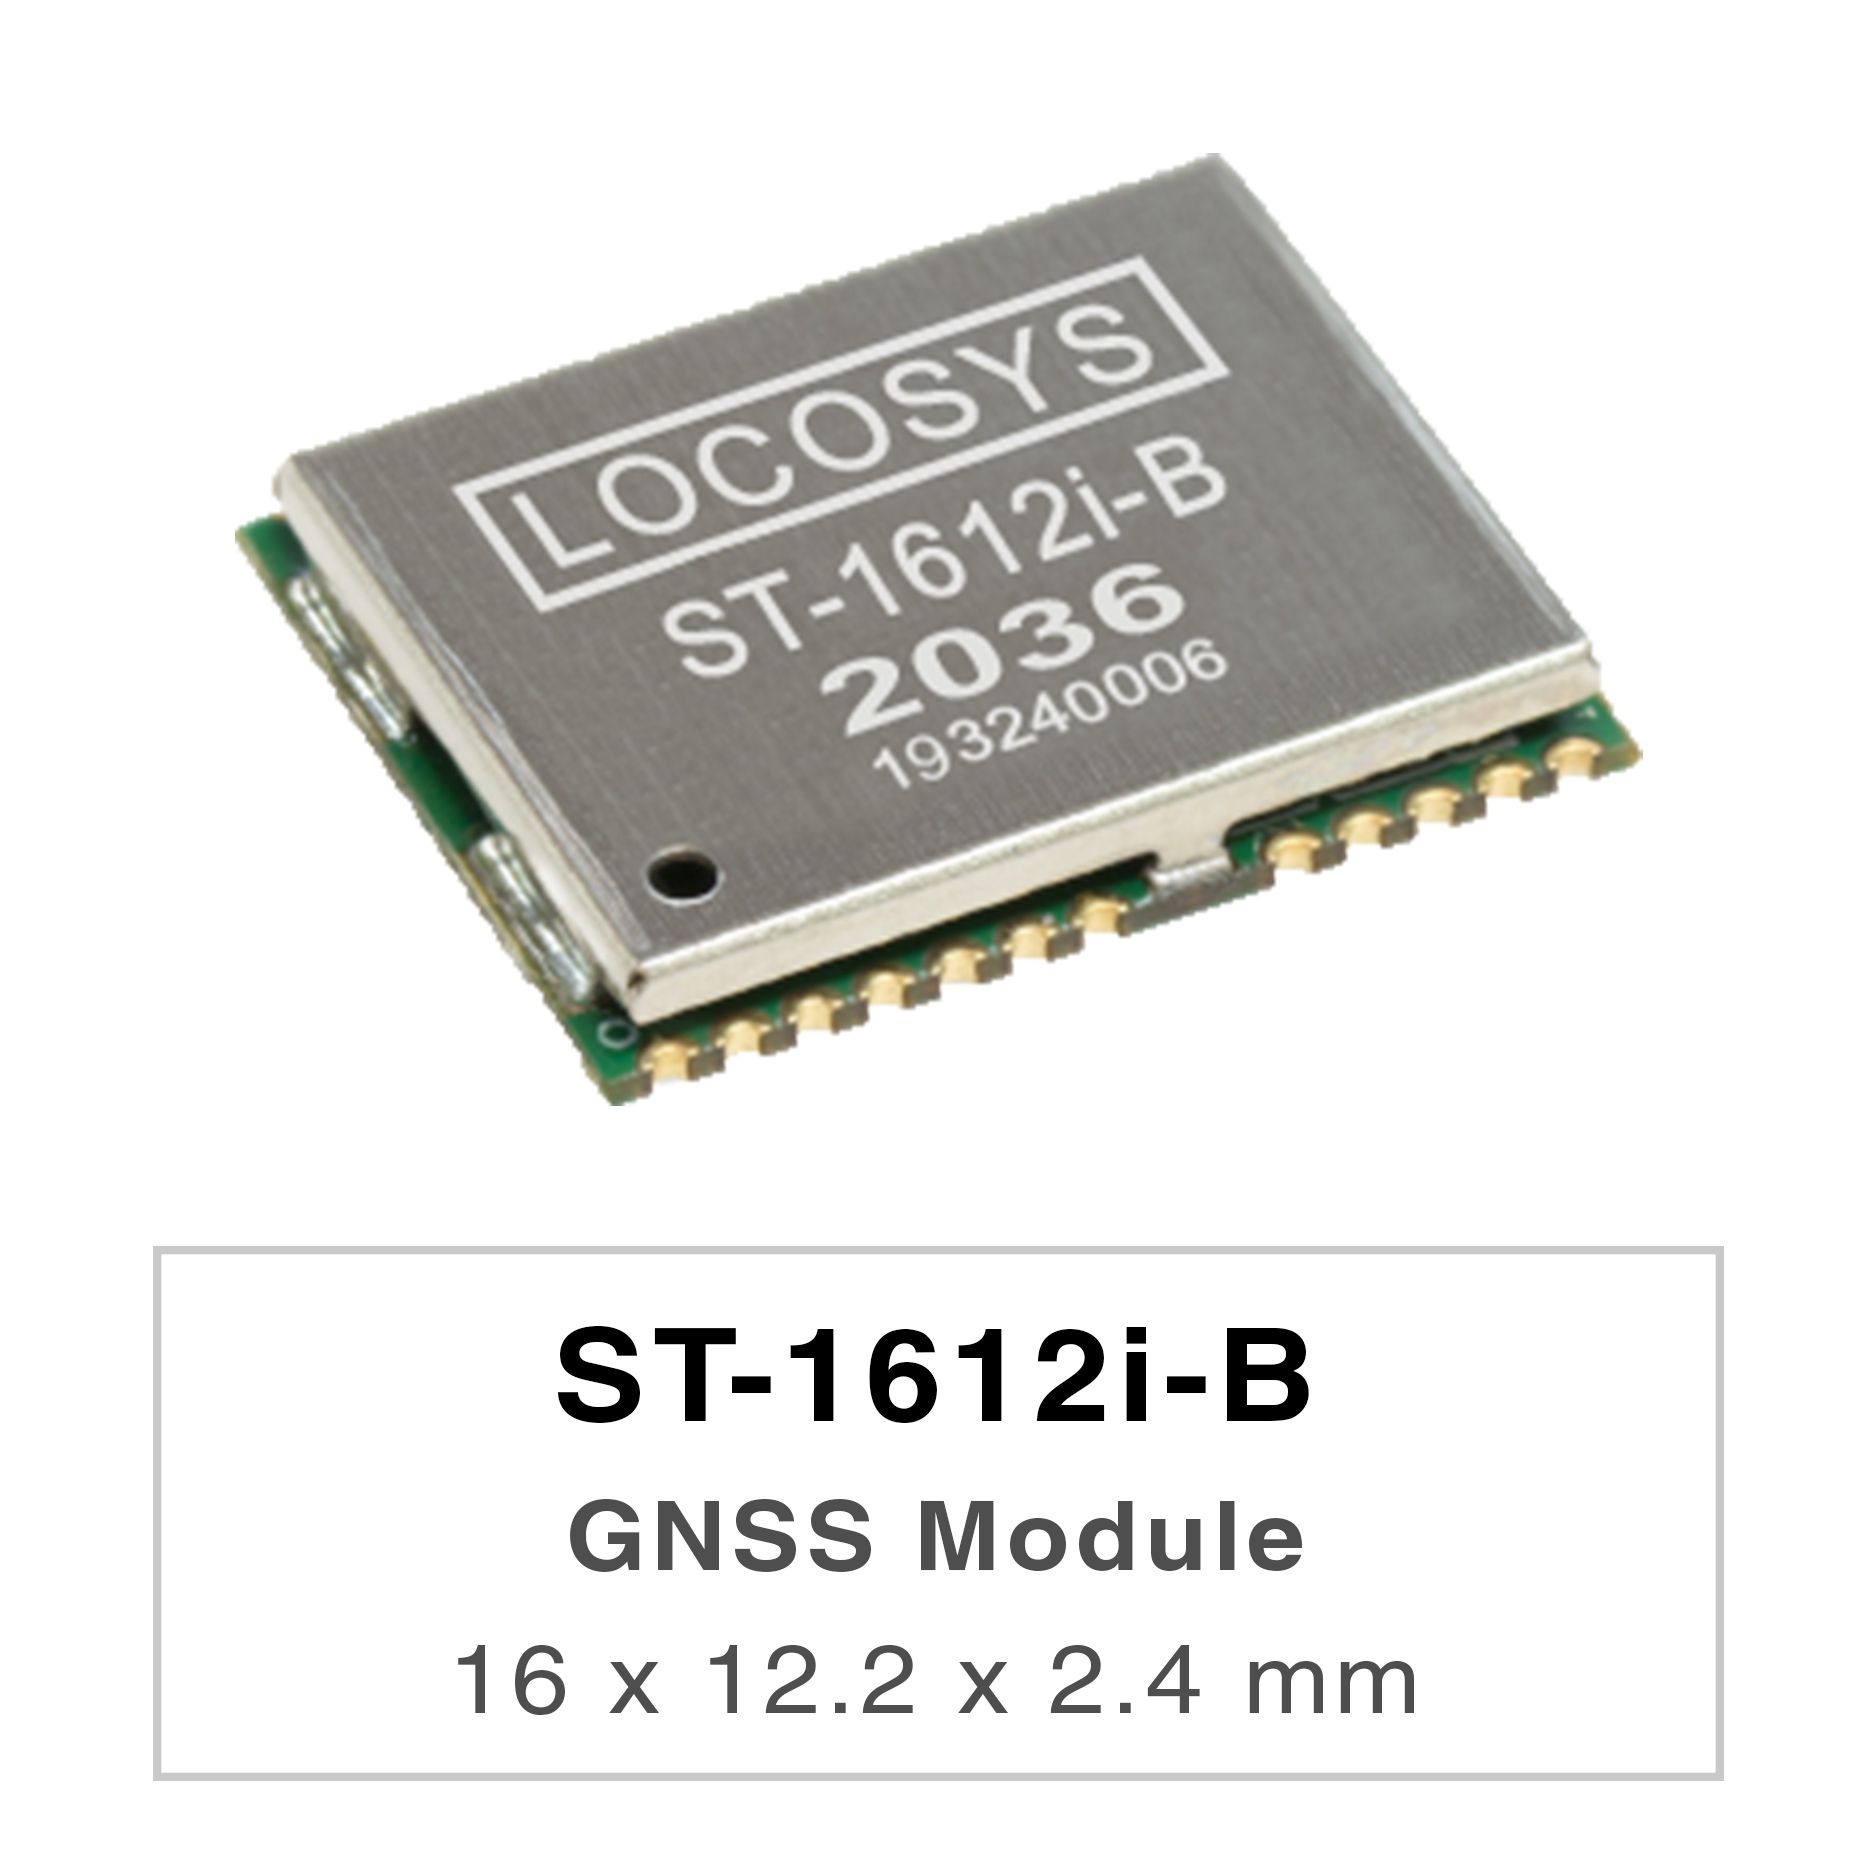 Das Modul LOCOSYS ST-1612i-B kann gleichzeitig mehrere Satellitenkonstellationen erfassen und verfolgen,
     <br />darunter GPS, BEIDOU, GALILEO und QZSS. Es zeichnet sich durch hohe Empfindlichkeit, geringen Stromverbrauch und kleinen Formfaktor aus.